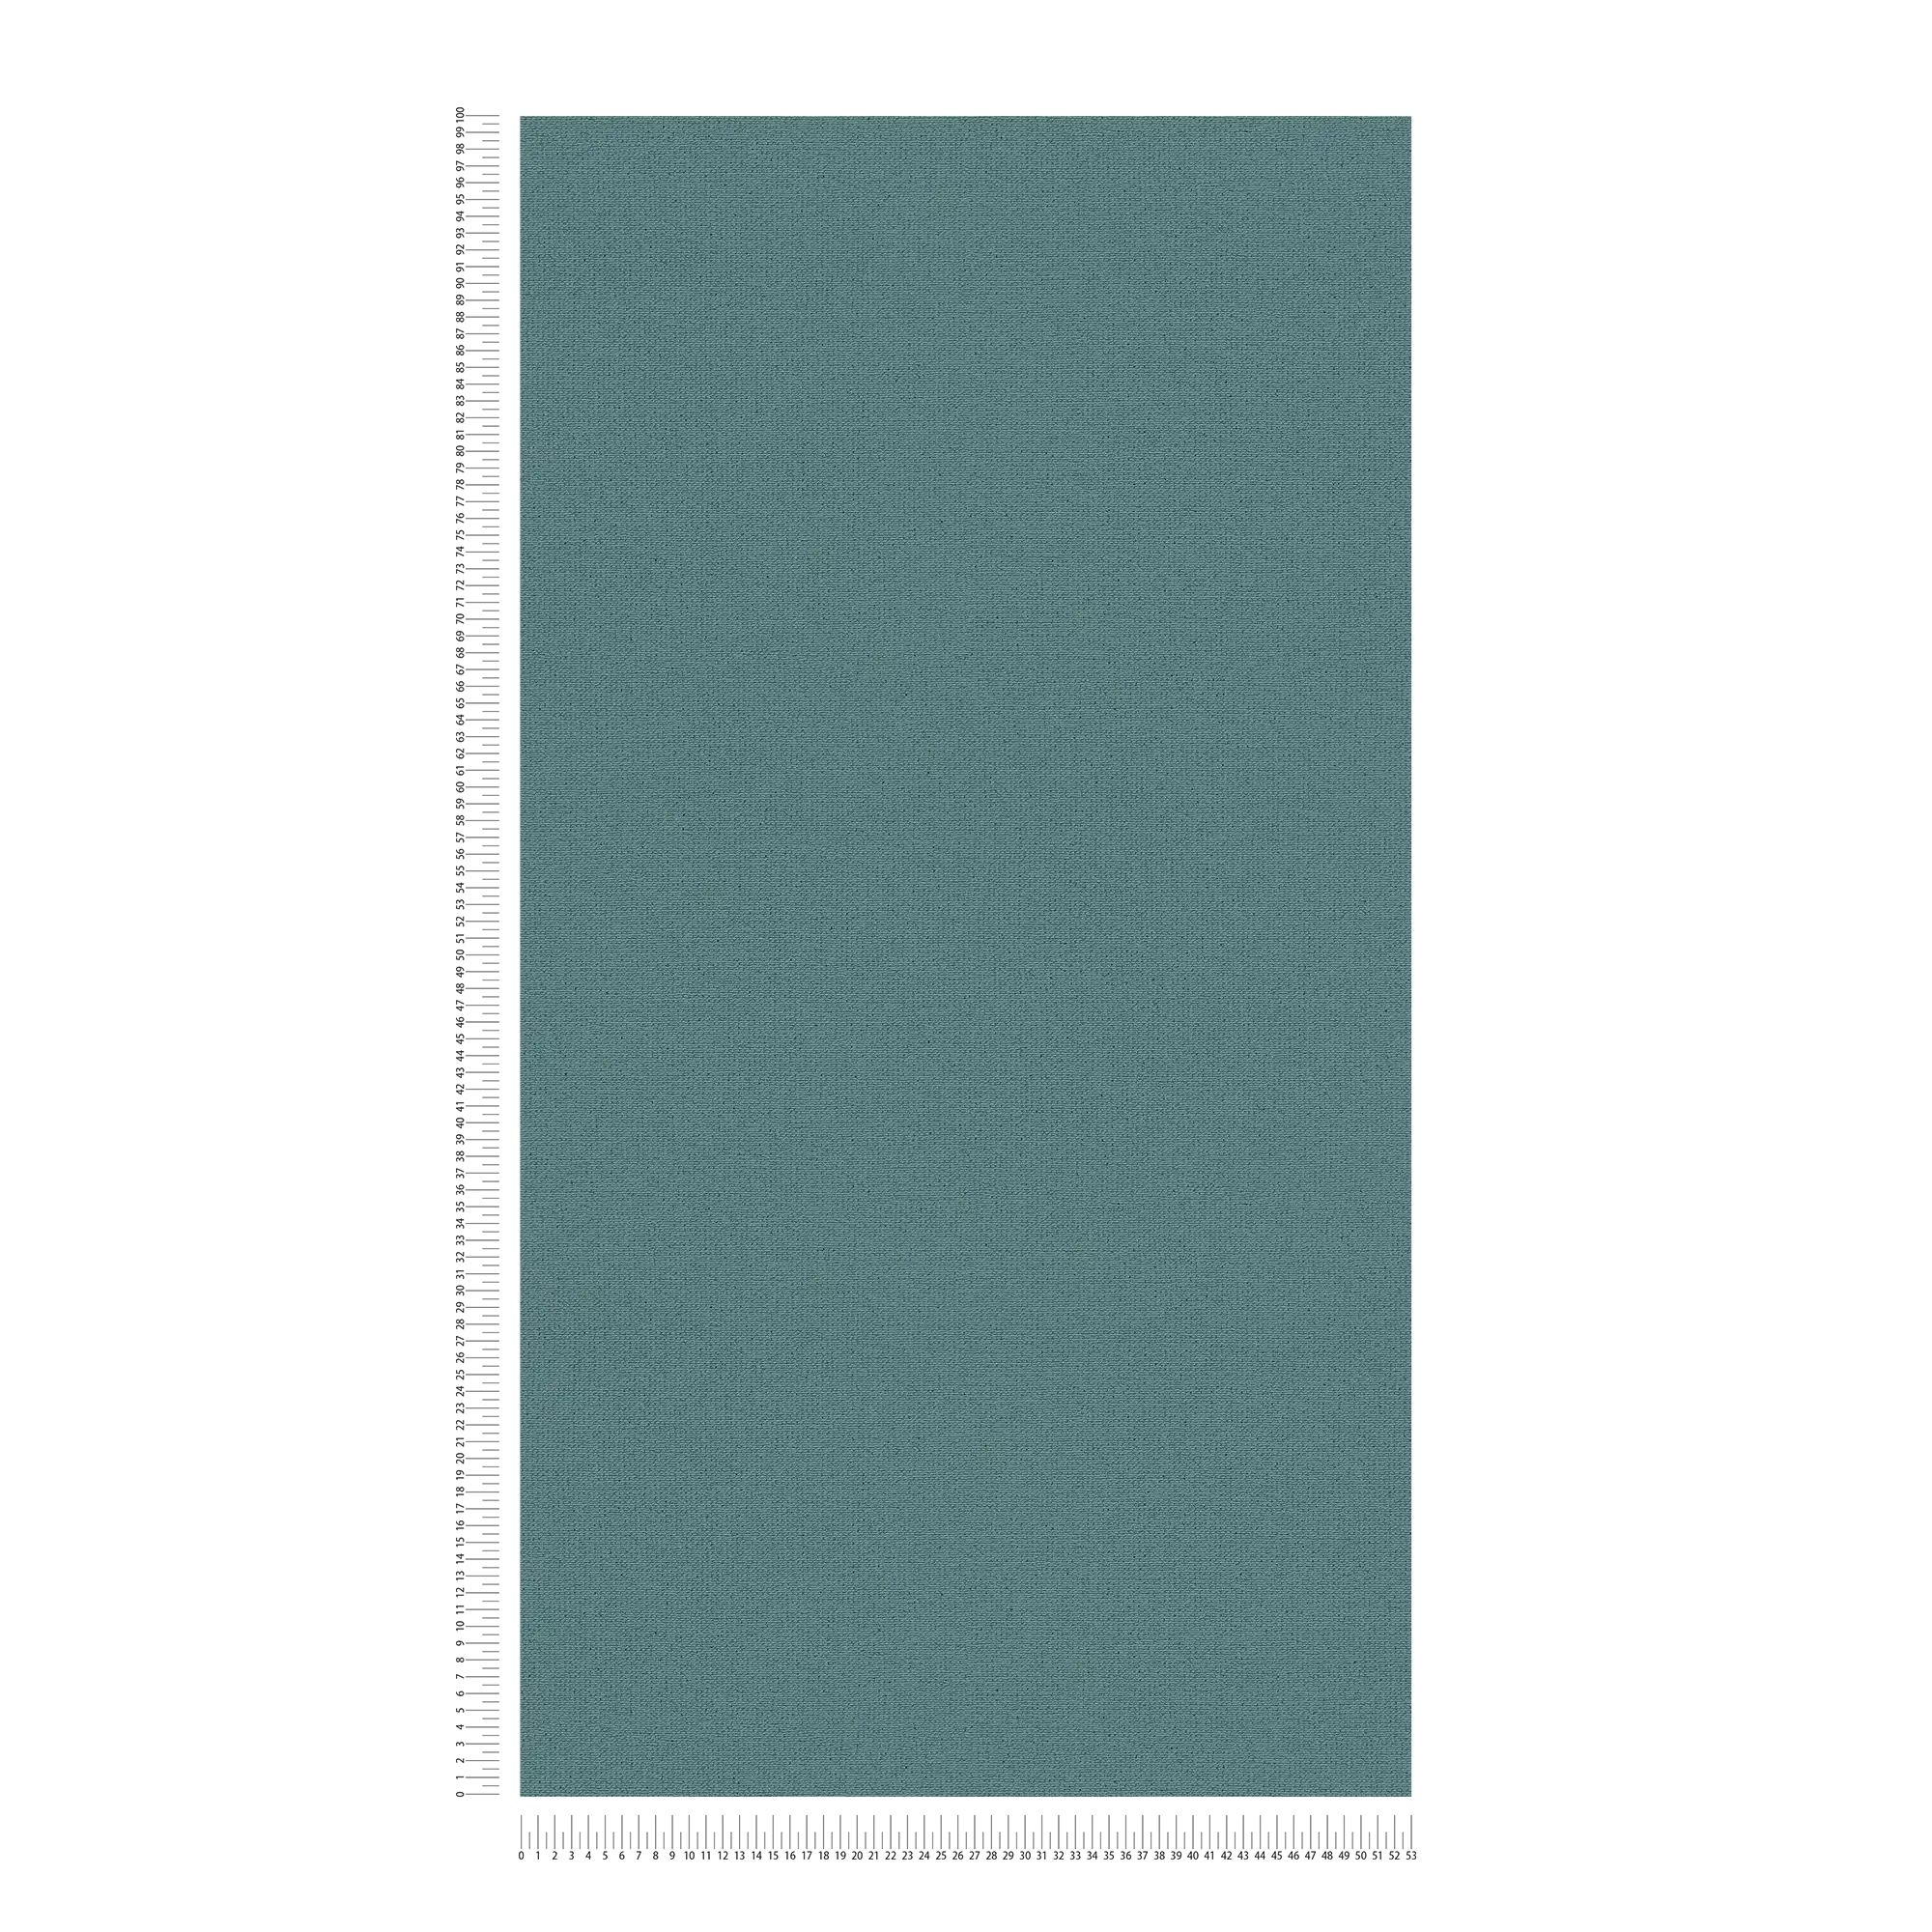             Papier peint de style scandinave chiné & mat - bleu, pétrole
        